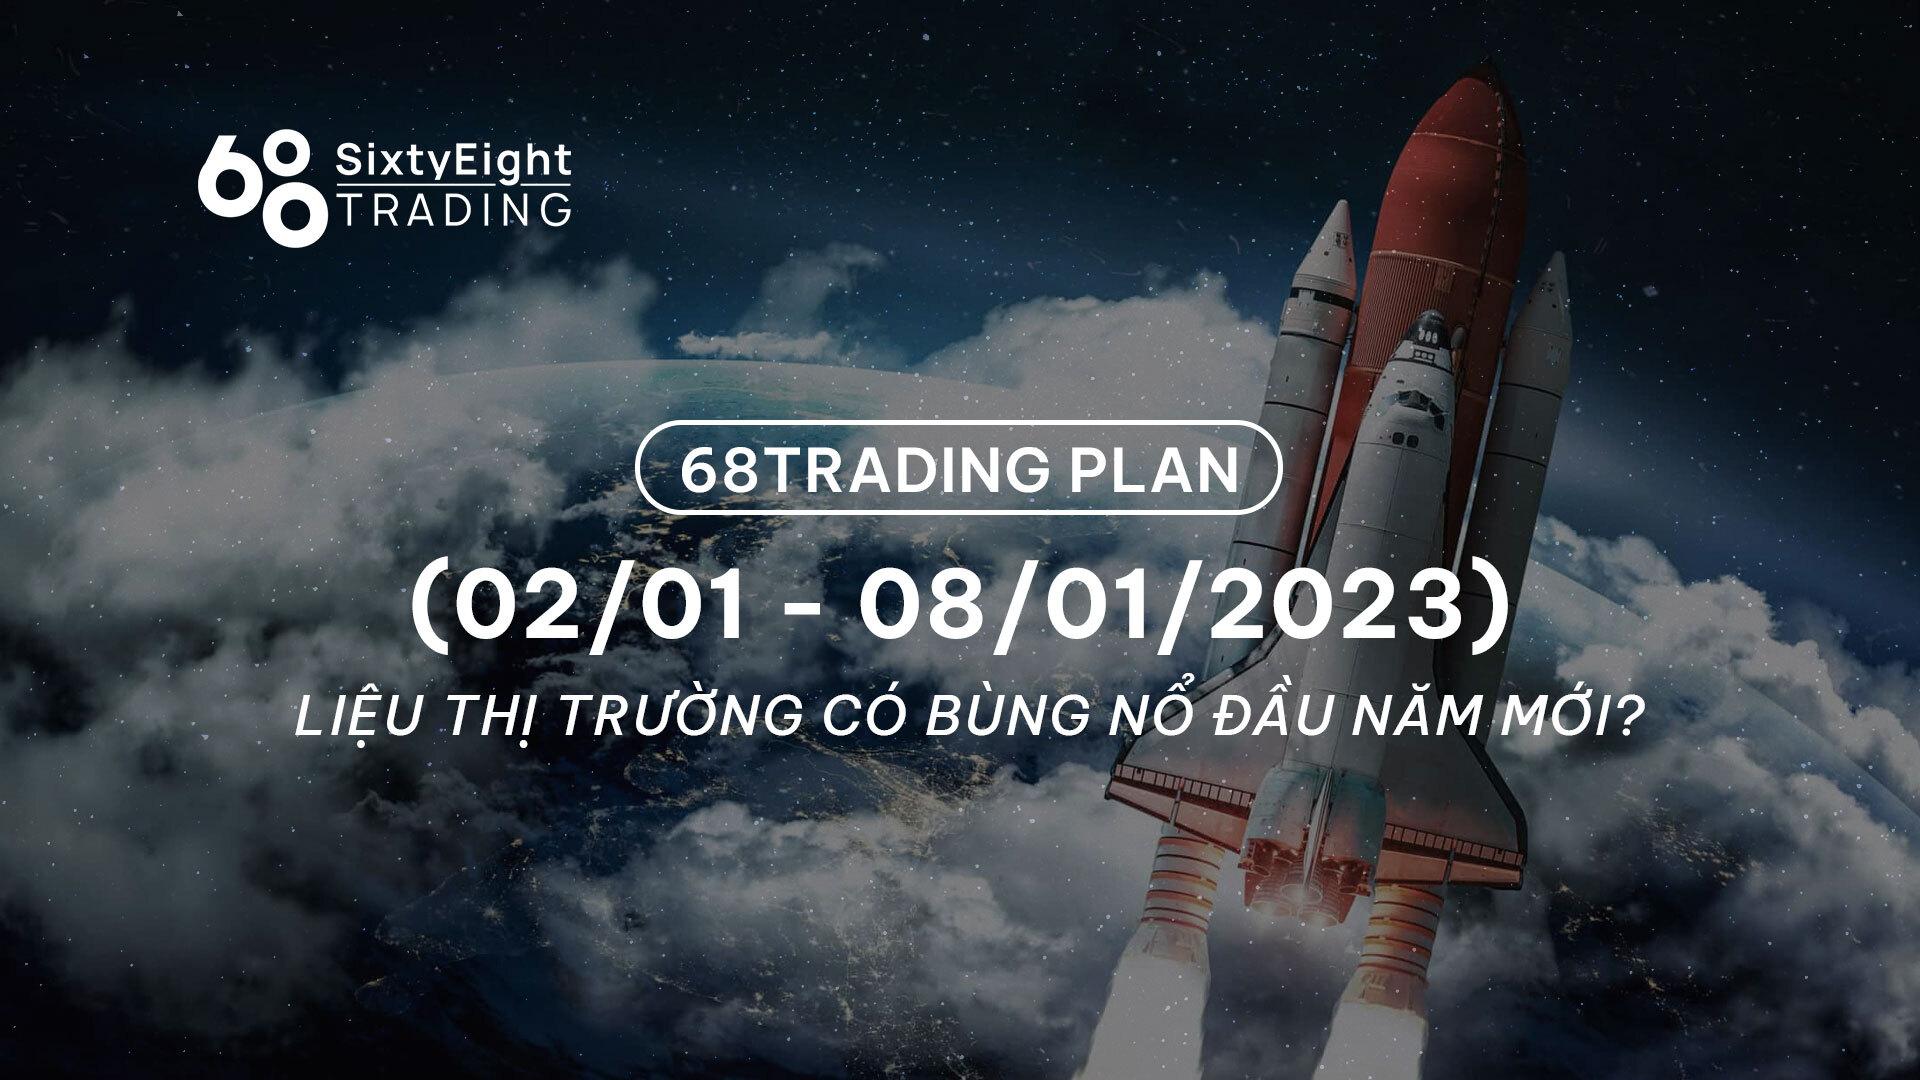 68-trading-plan-0201-08012023-lieu-thi-truong-co-bung-no-dau-nam-moi